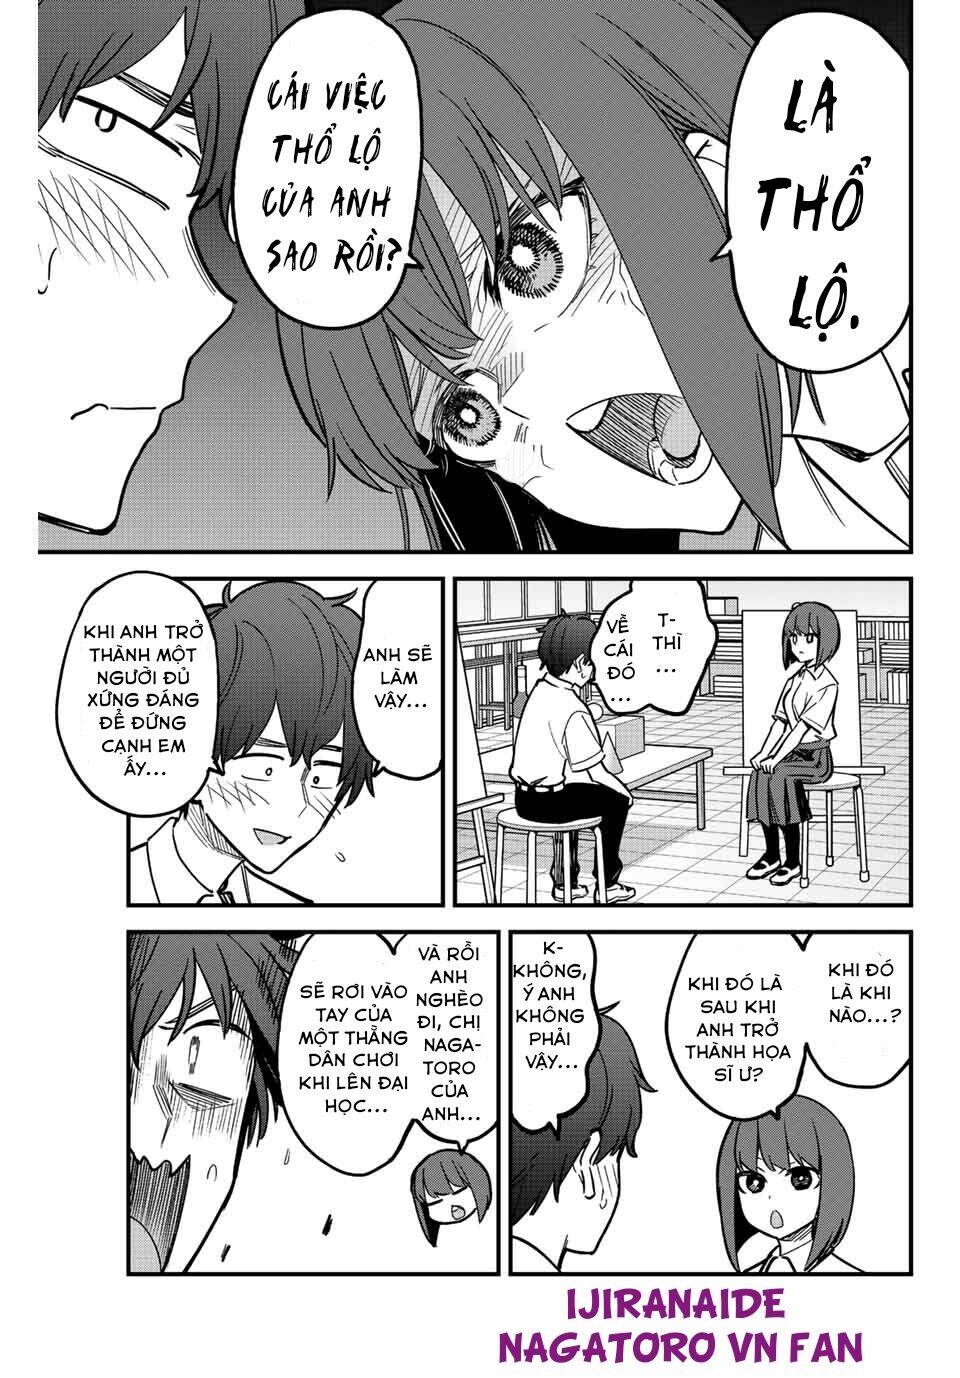 Please Don't Bully Me - Nagatoro-San Chapter 110: Vậy, anh và chị Nagatoro thì sao? - Trang 5